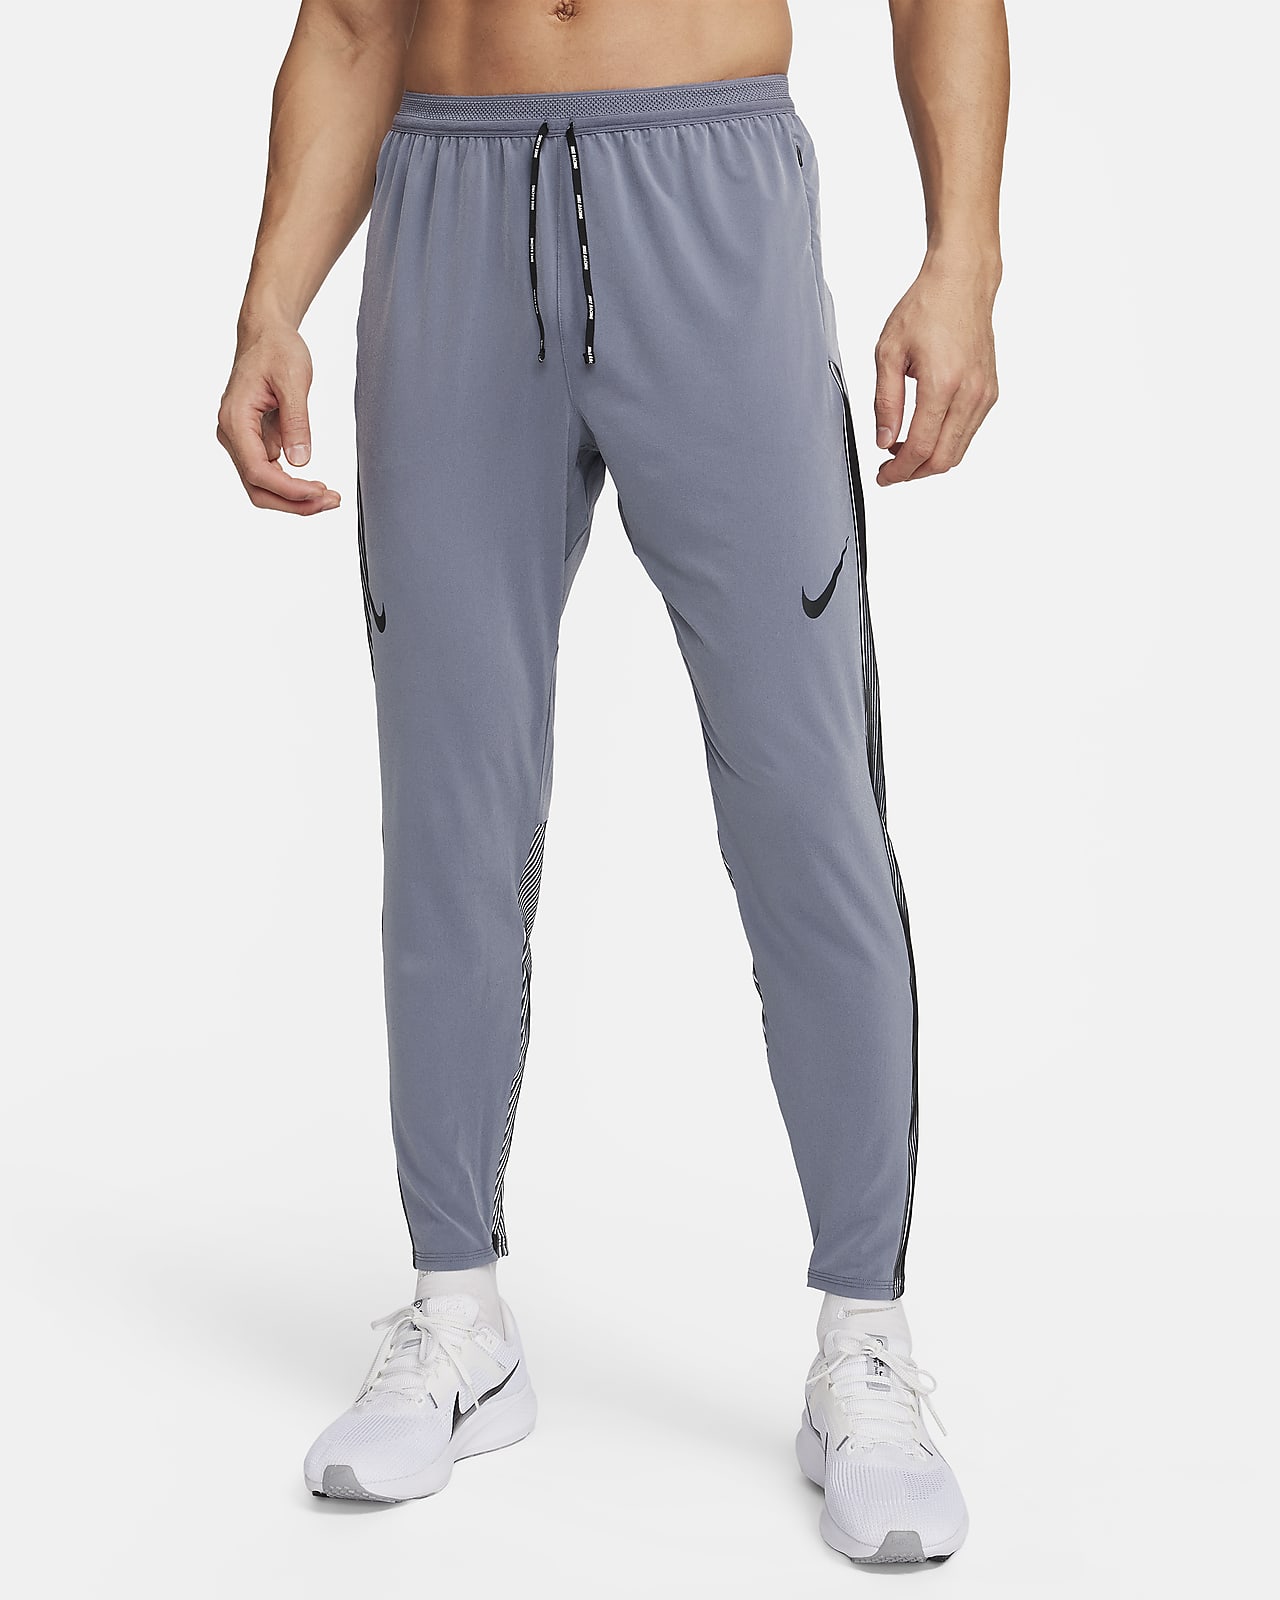 Men's Nike Therma-FIT Pants